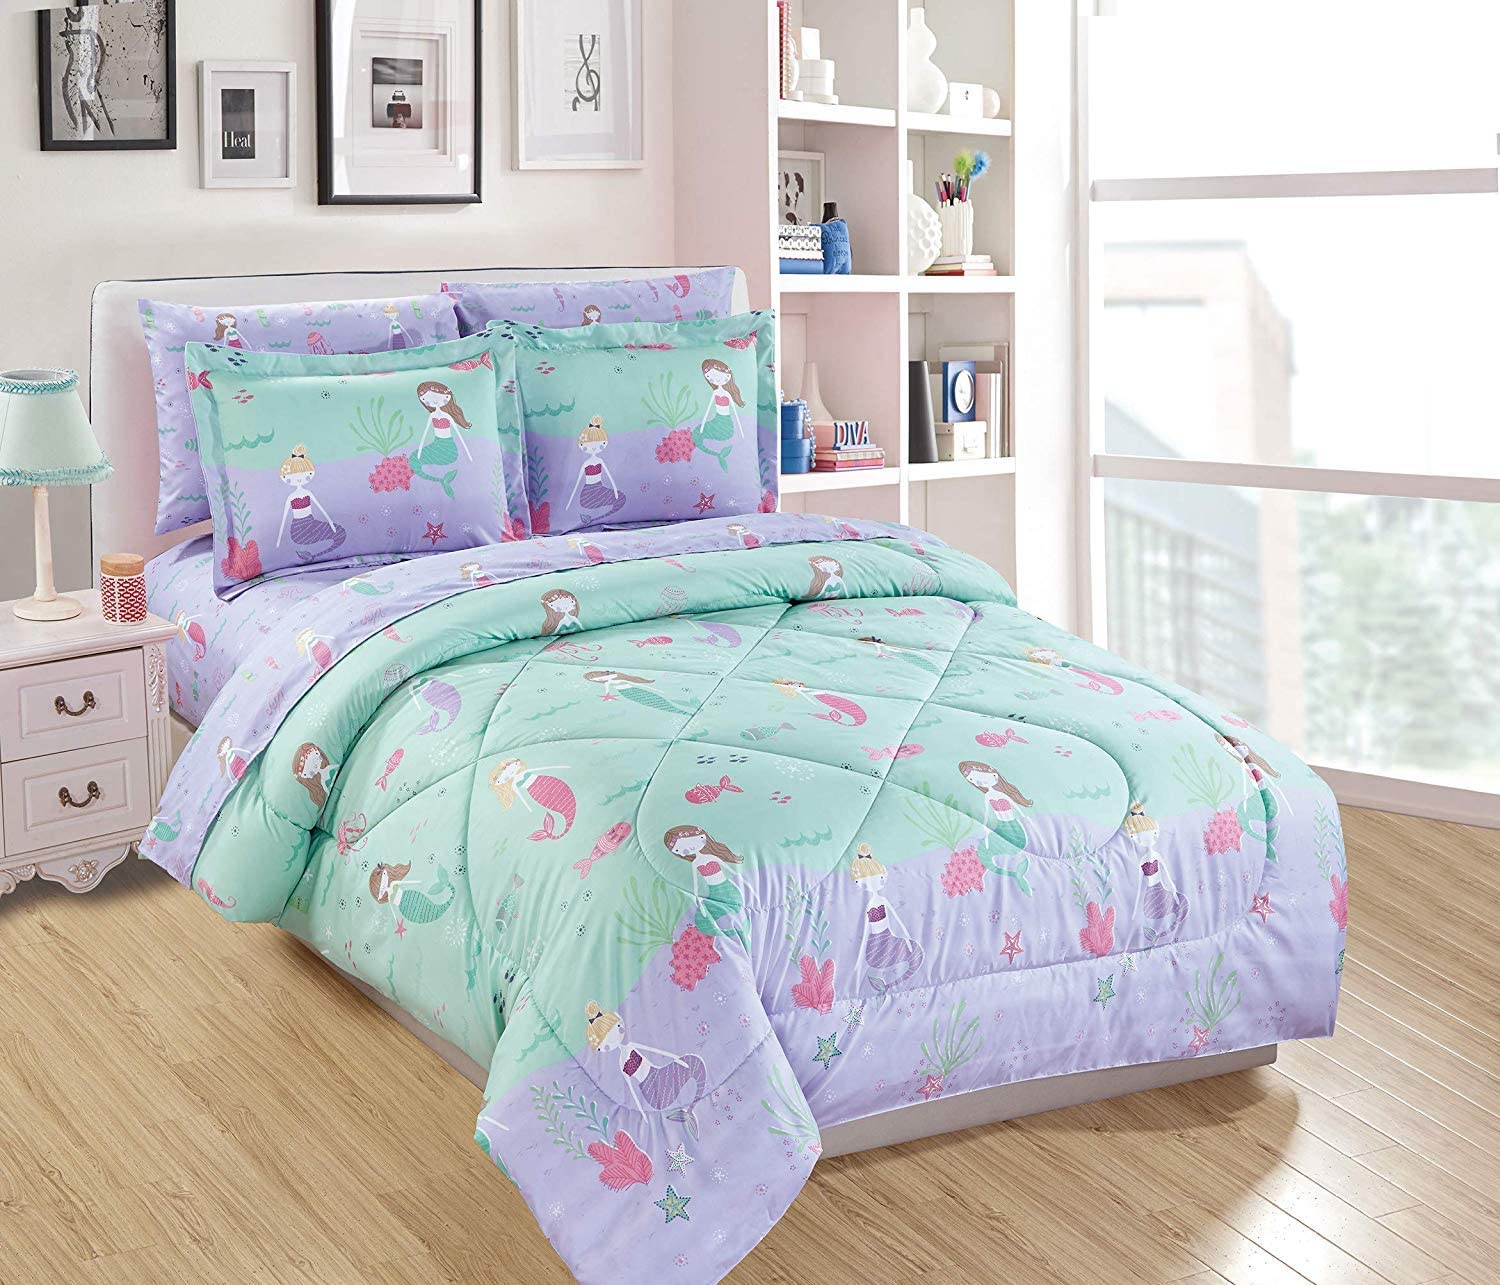 Boys Girl Kids Teens Twin/Full Comforter Bedroom Reversible Complete Set 6/8 pc 